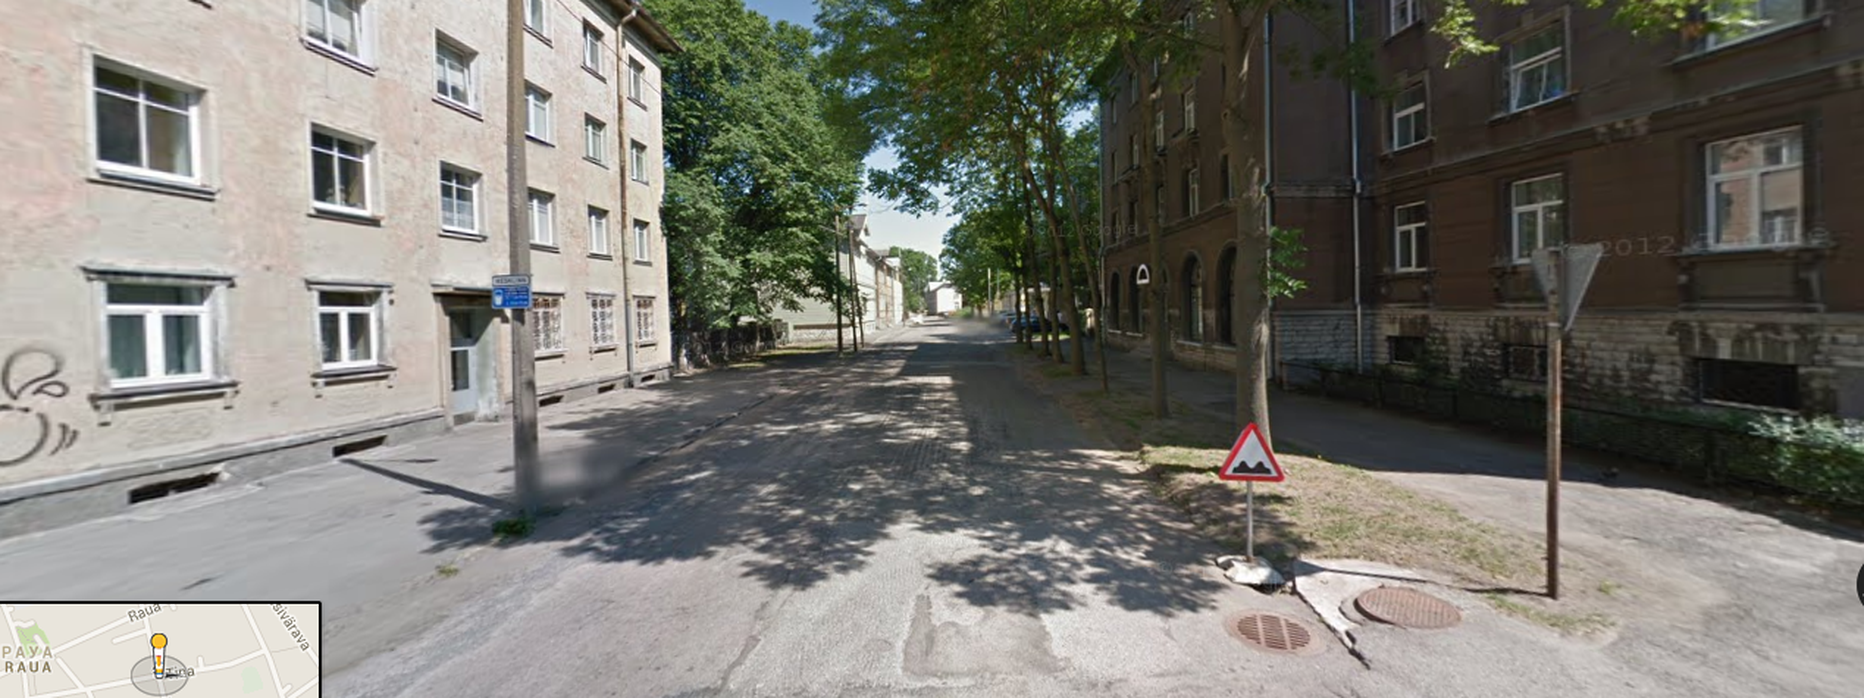 Улица Тина в Таллинне.